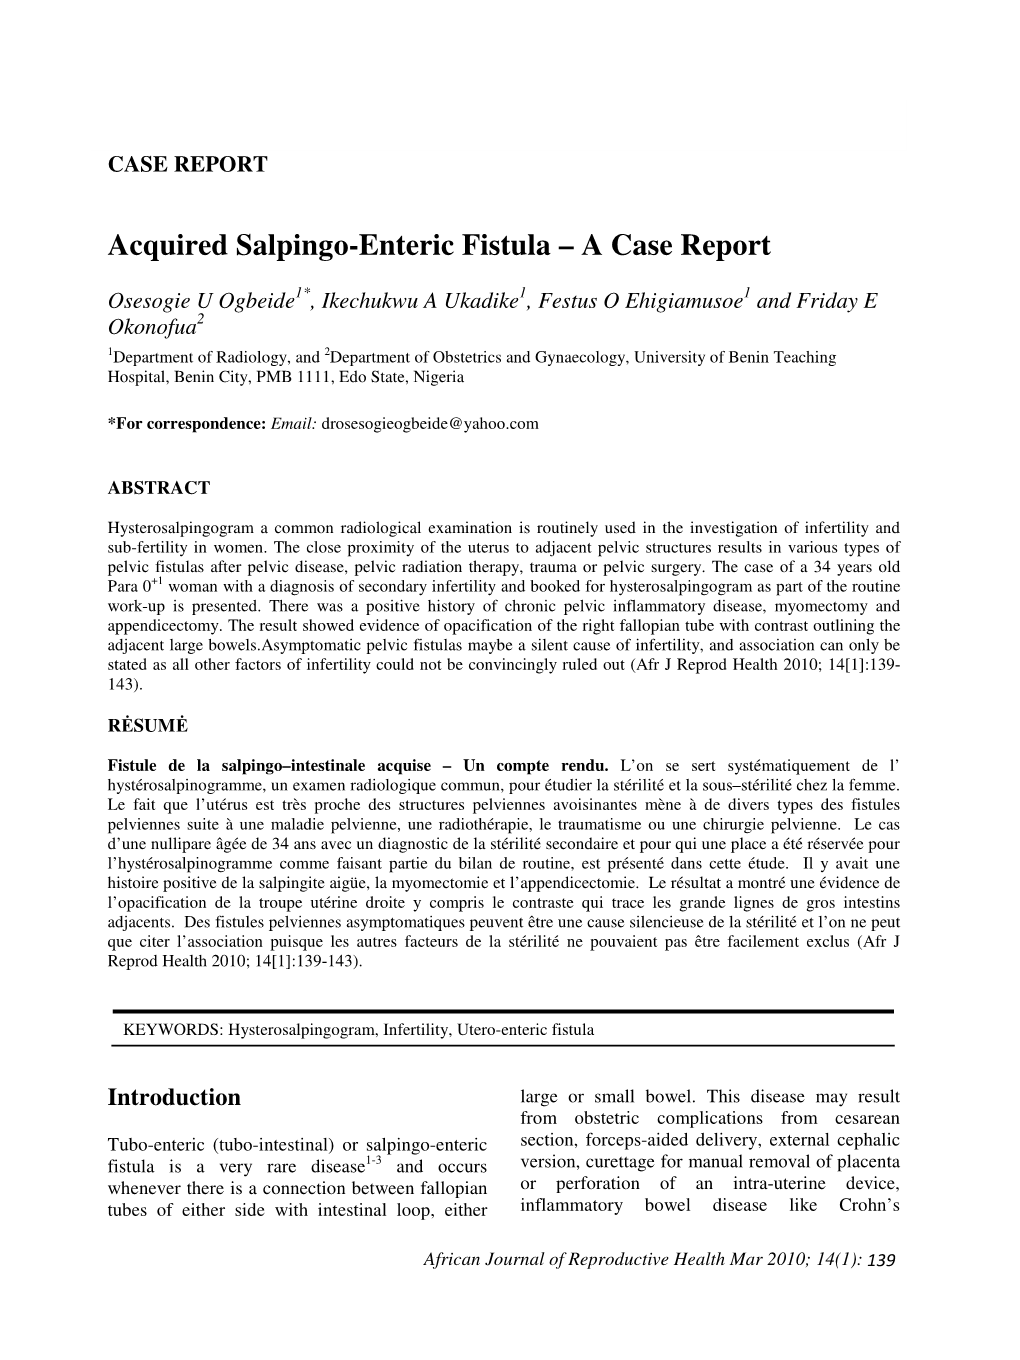 Acquired Salpingo-Enteric Fistula – a Case Report